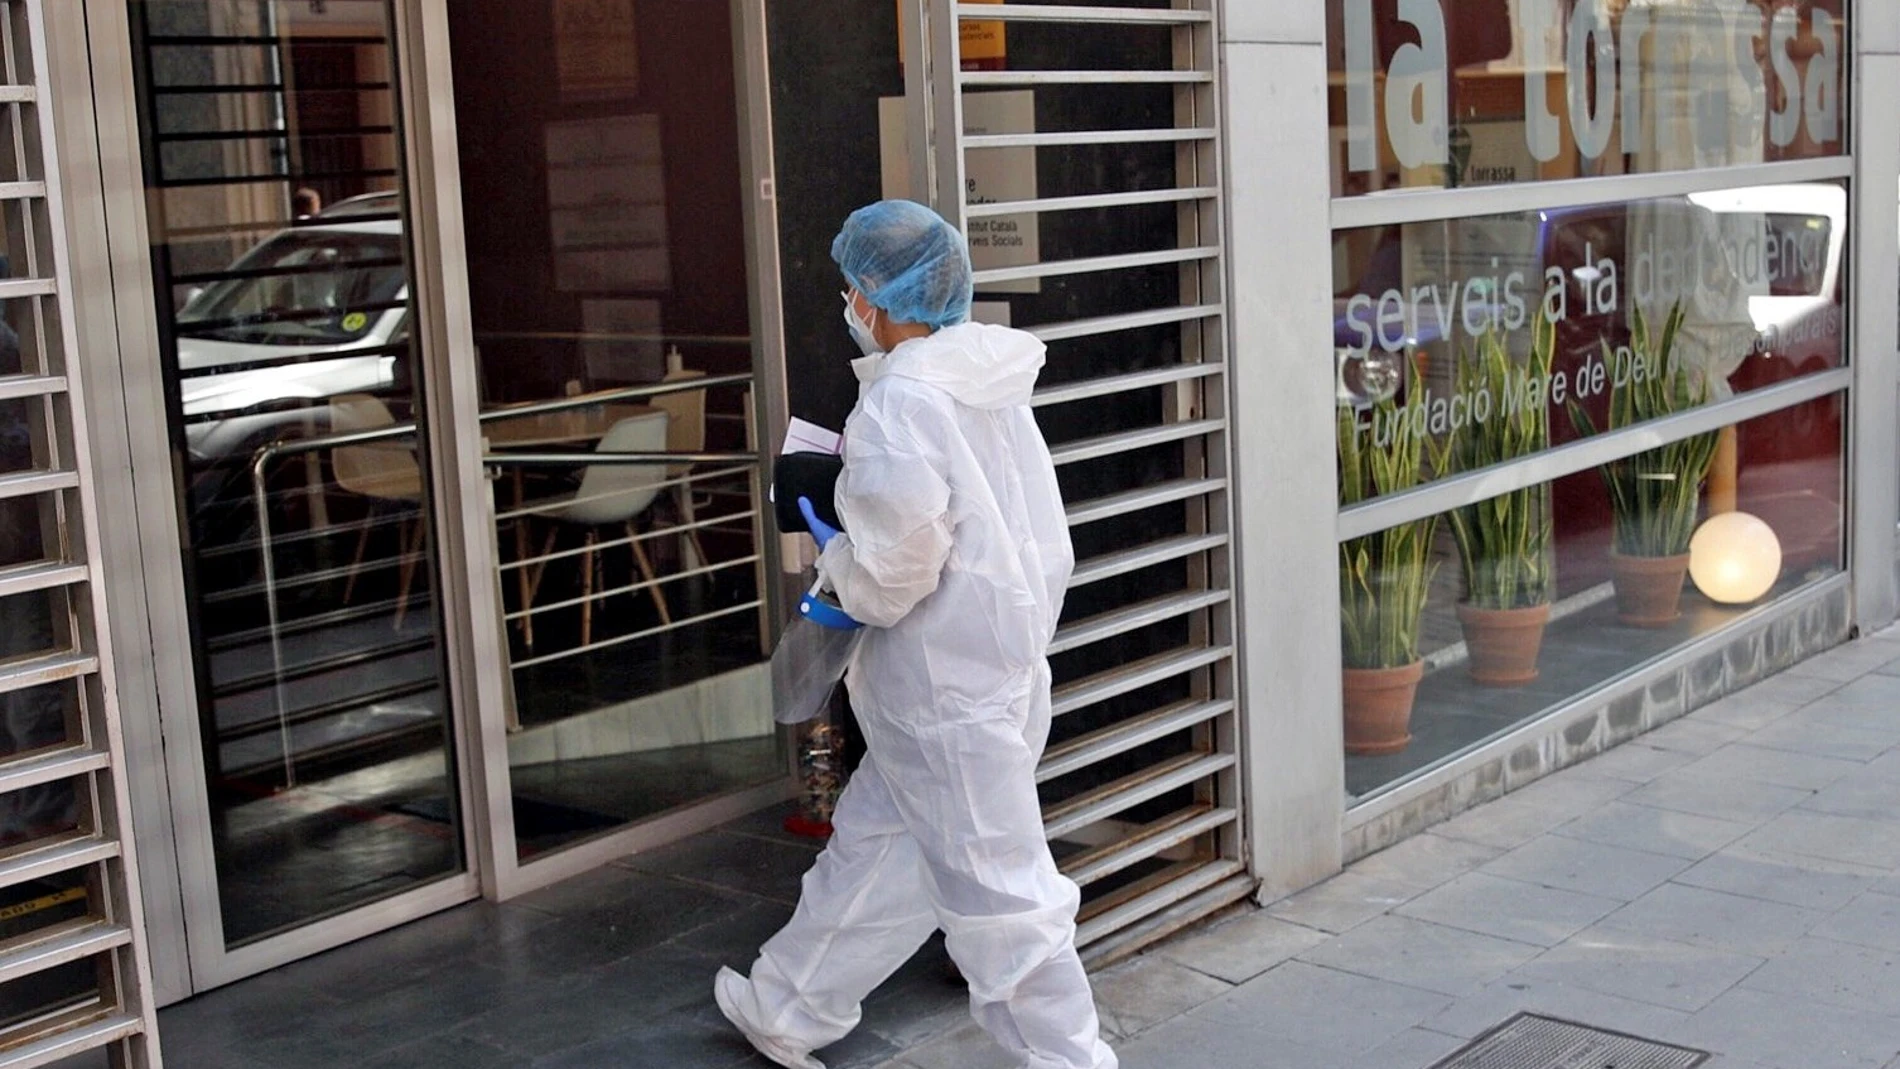 Una sanitaria entra en la residencia geriátrica del barrio de La Torrassa en L'Hospitalet (Barcelona), donde se ha detectado un brote de covid-19 que afecta a mas de 100 personas